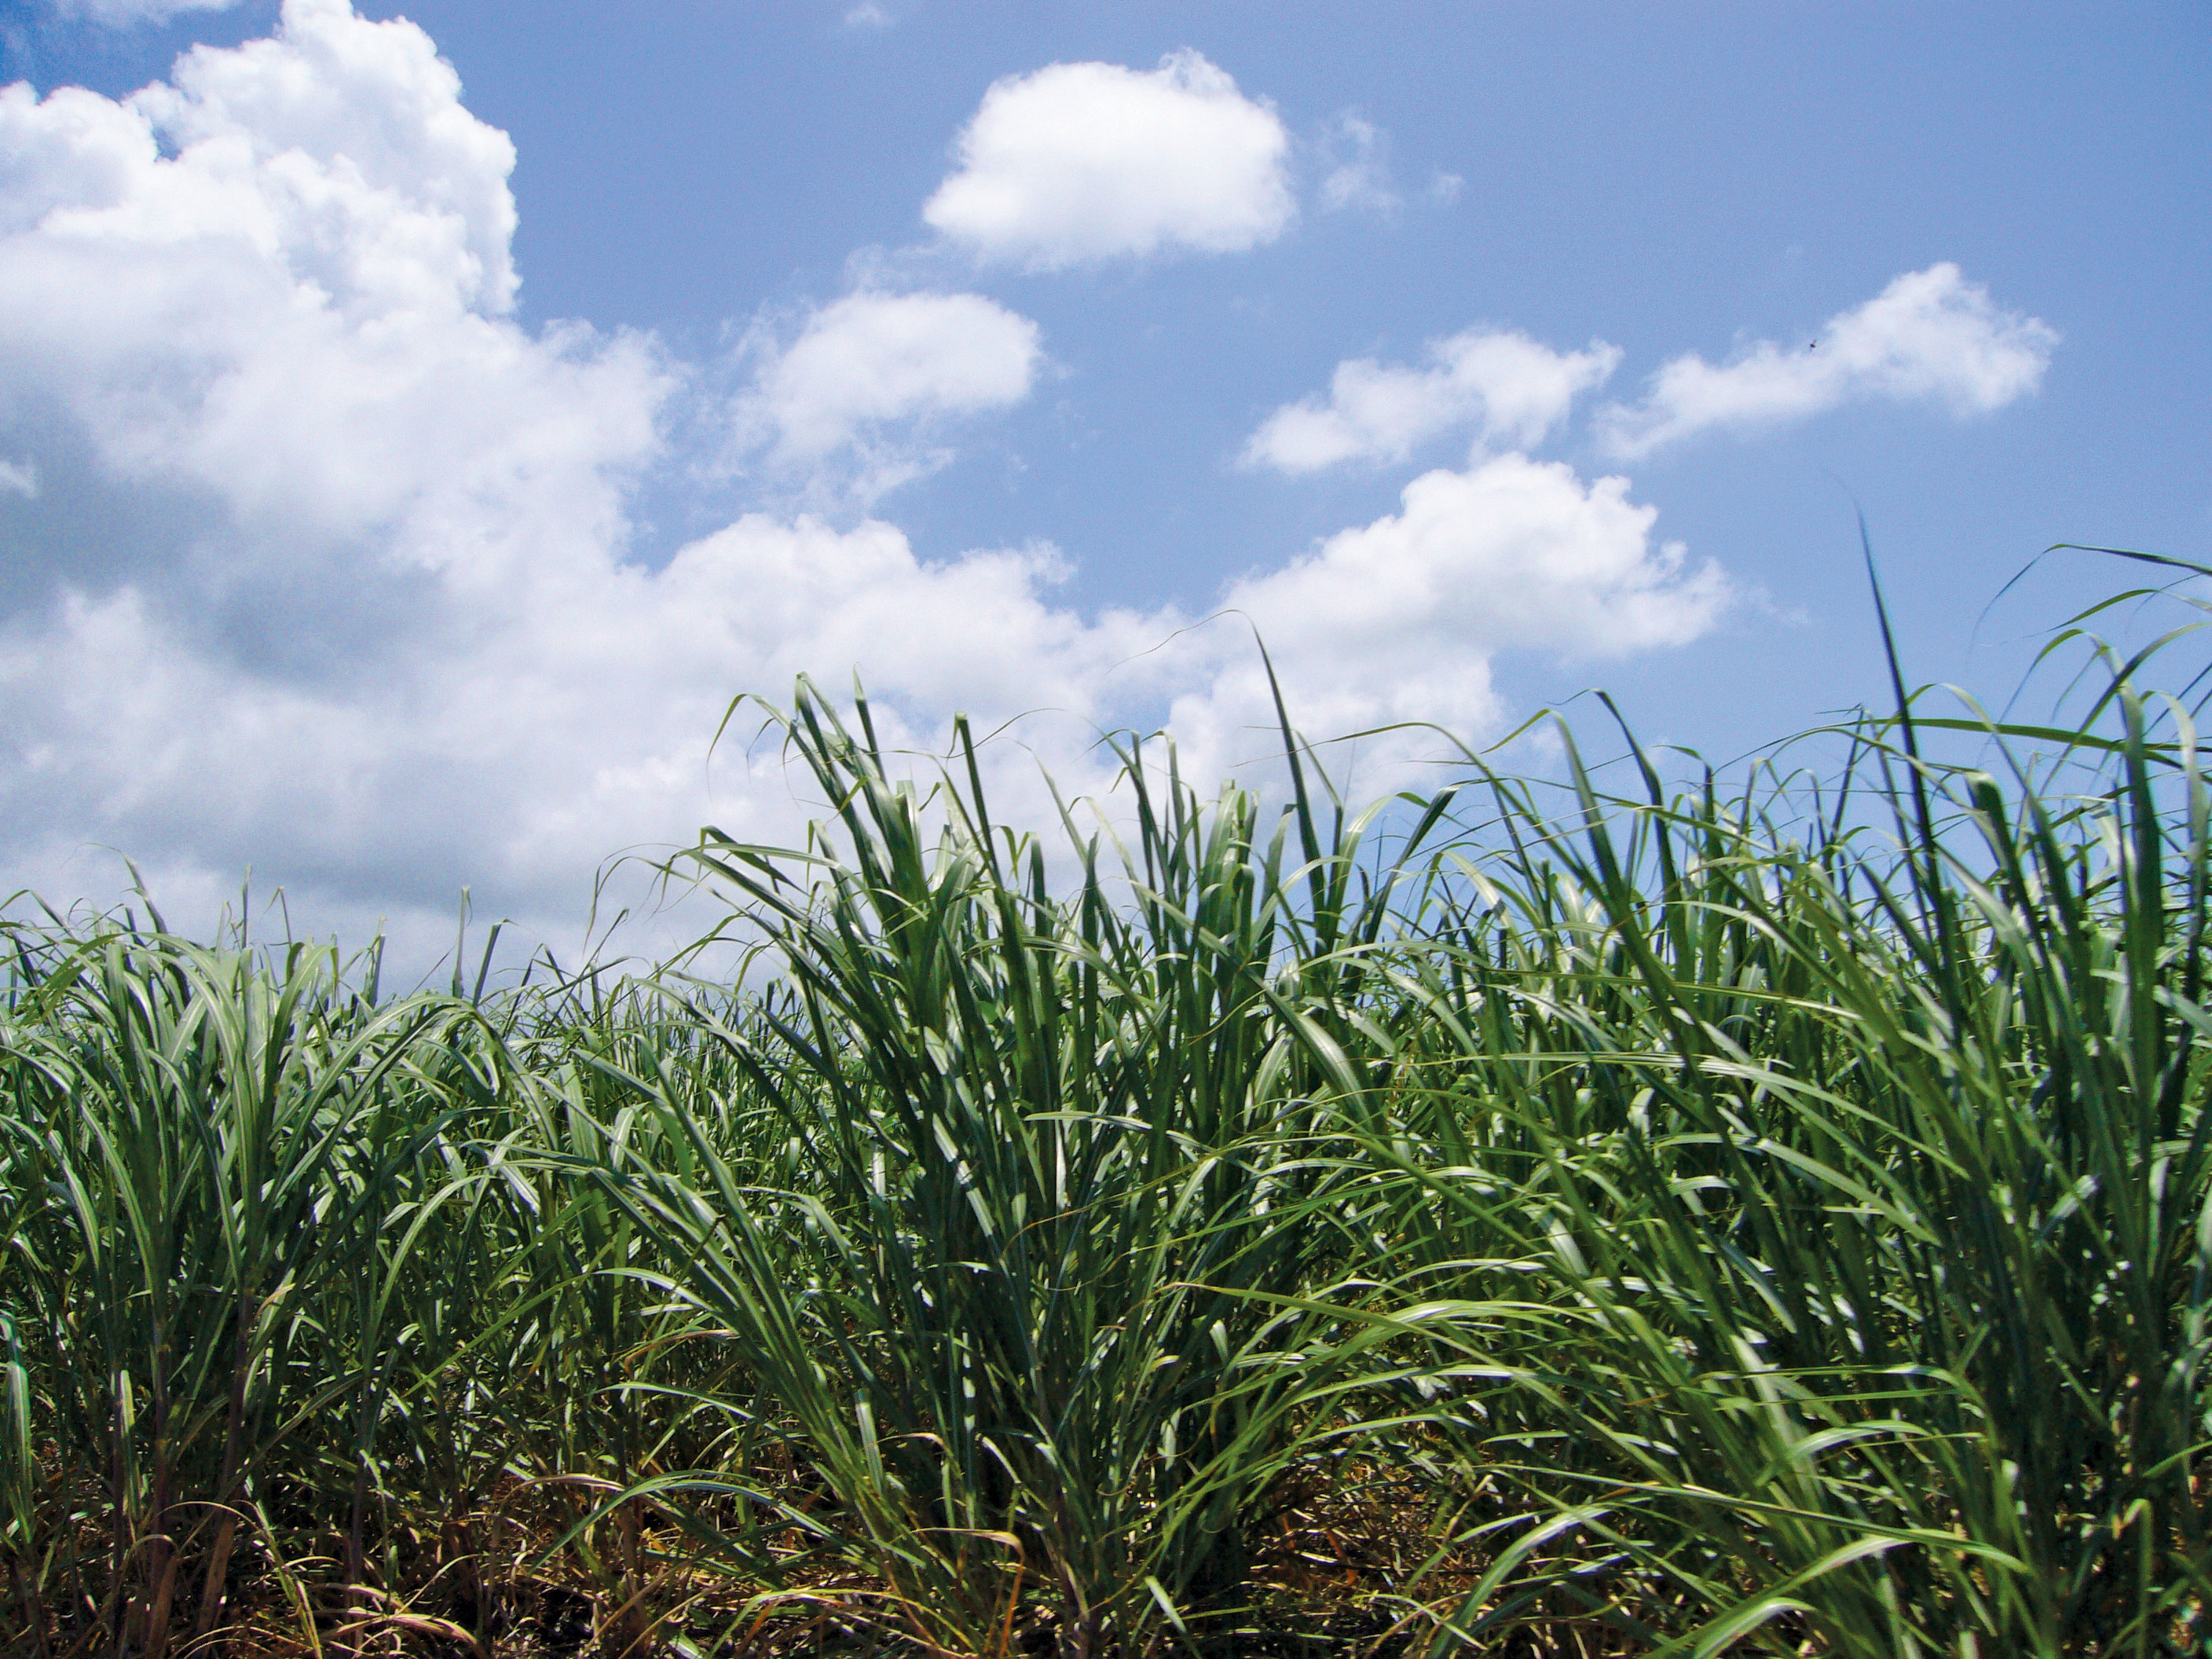 image of sugarcane